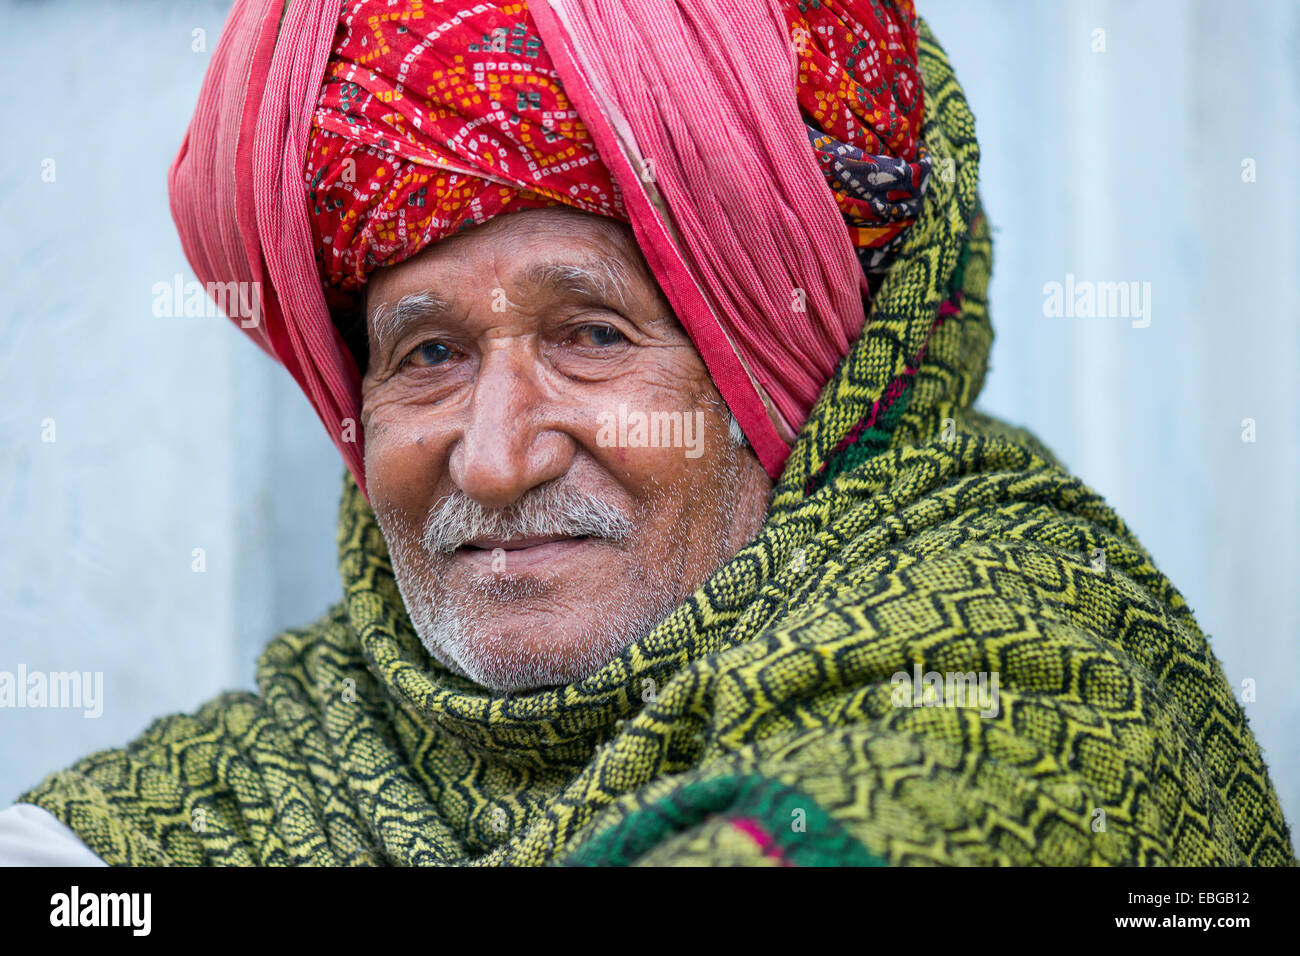 Ancianos hombre indio con un turbante rojo, Bassi, Rajasthan, India Foto de stock